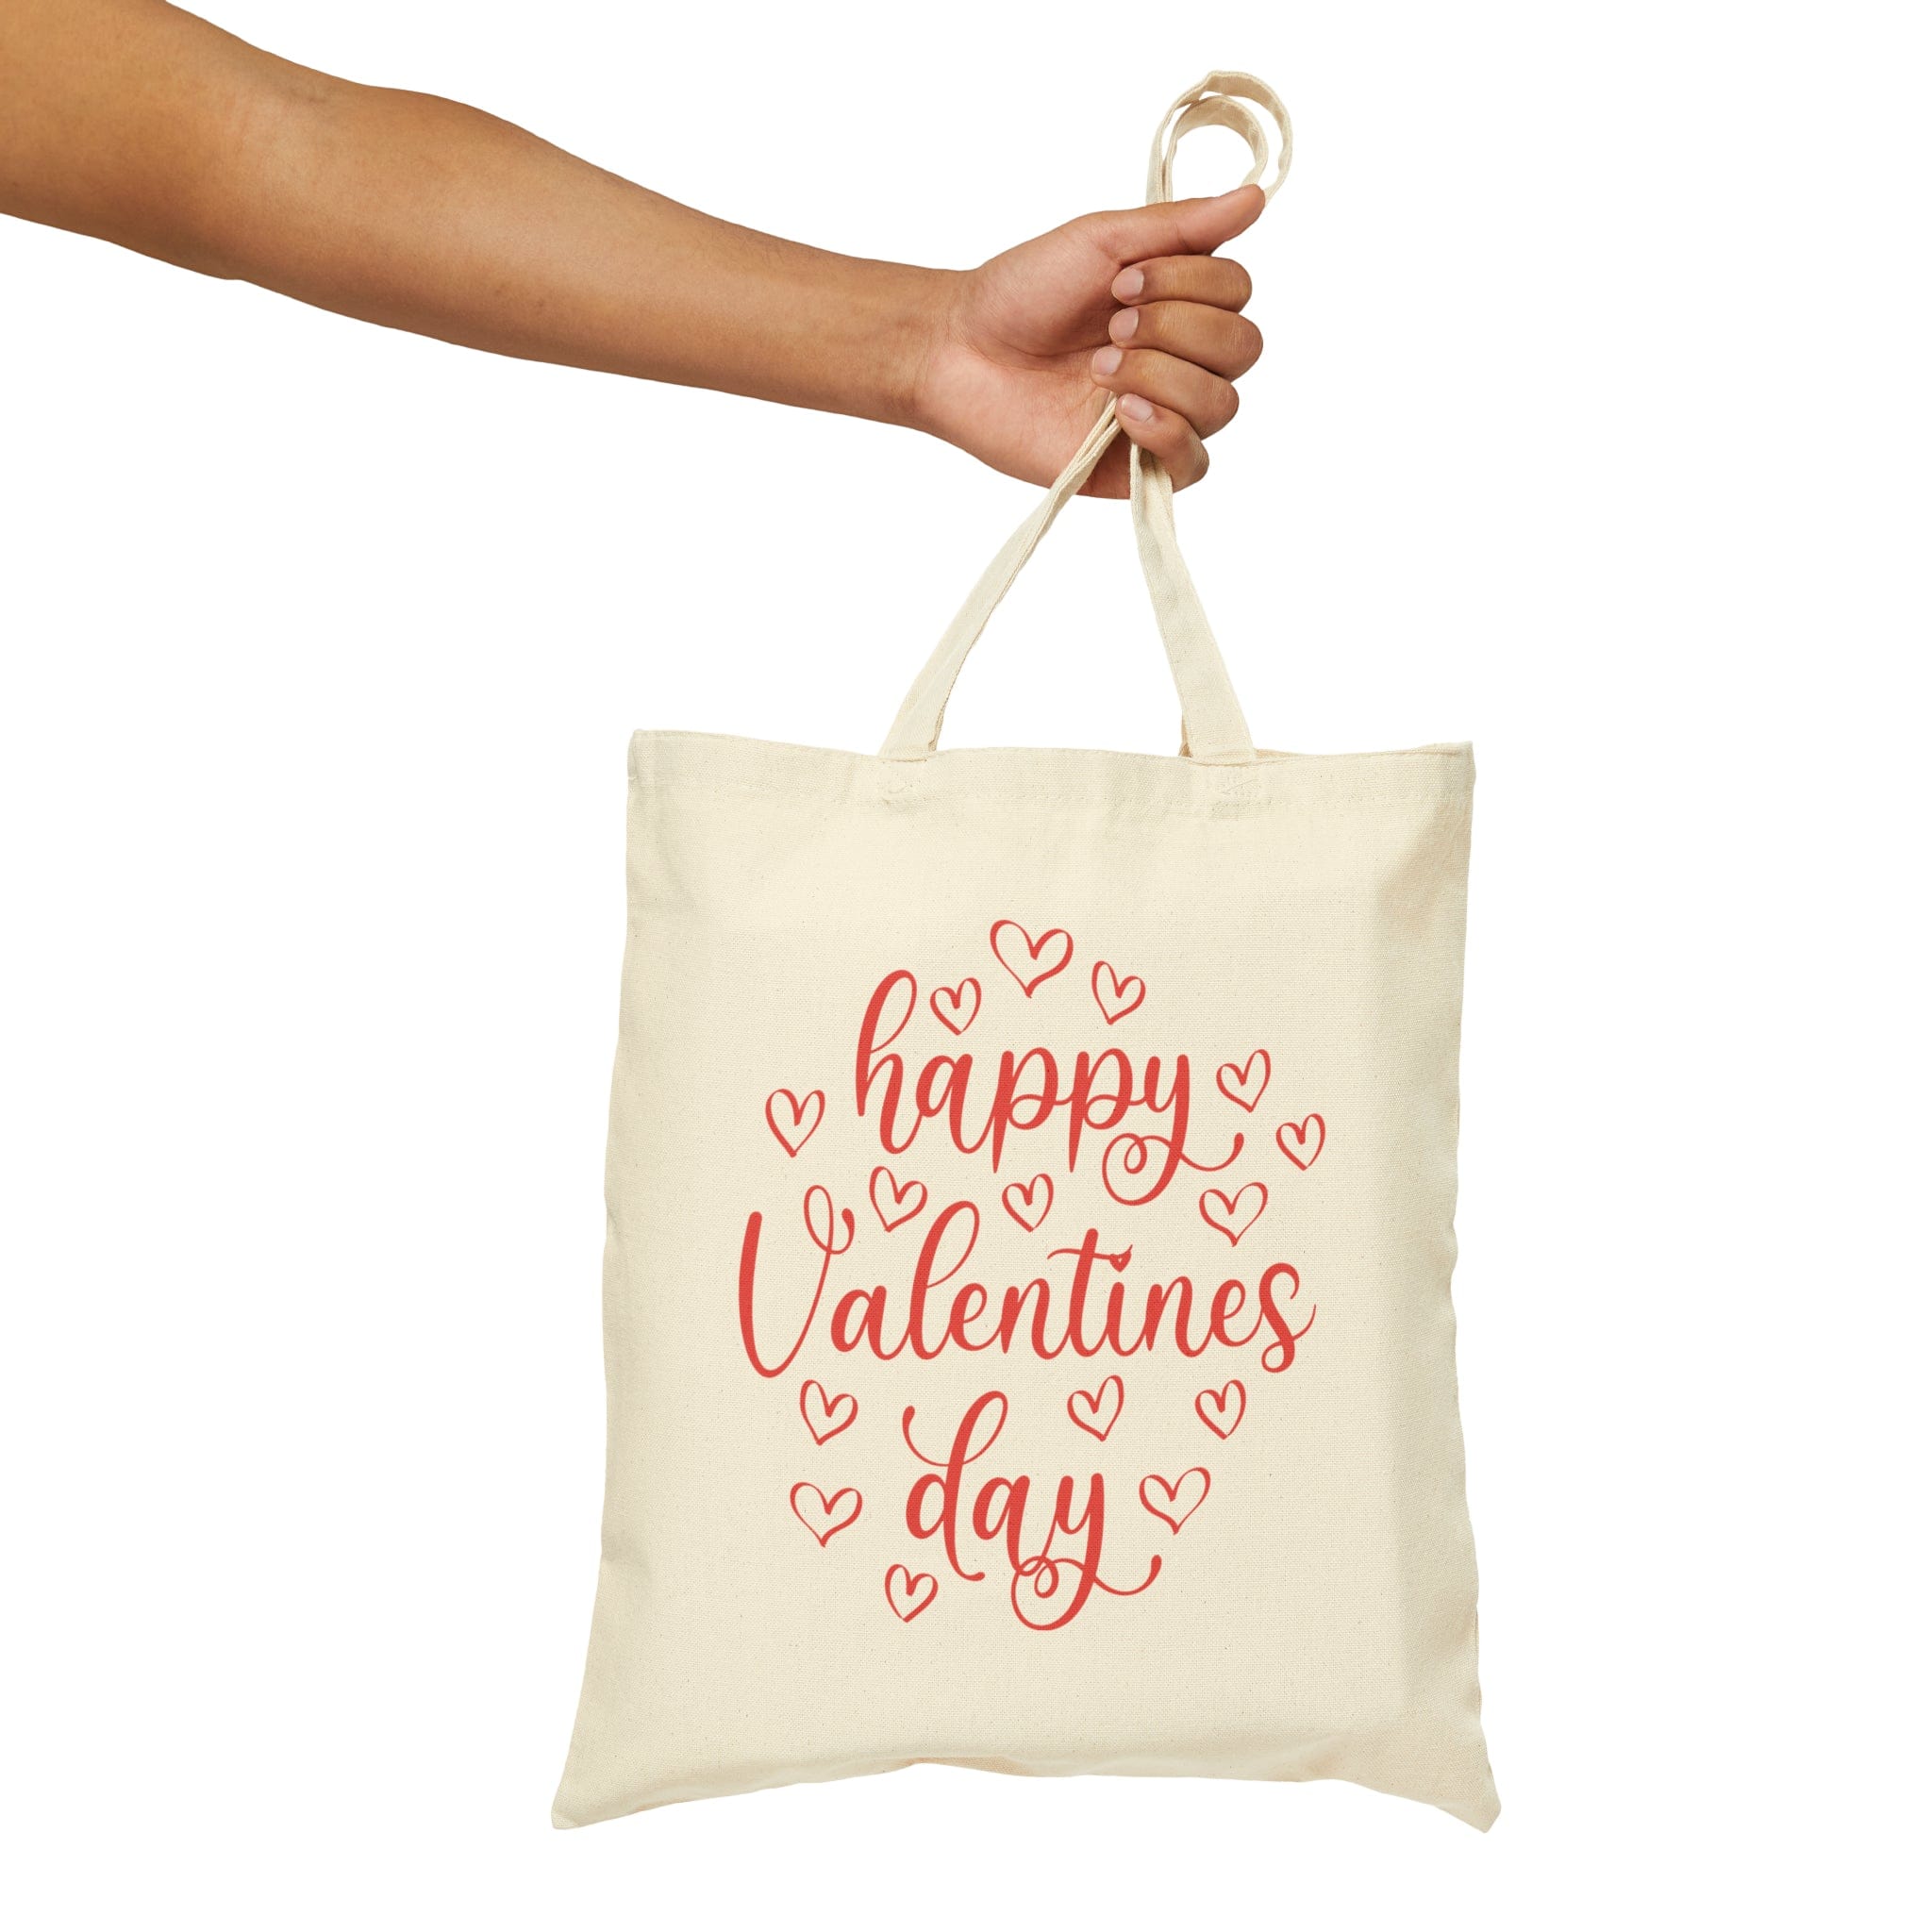 Happy valentine's Deluxe Cotton Canvas Tote Bag